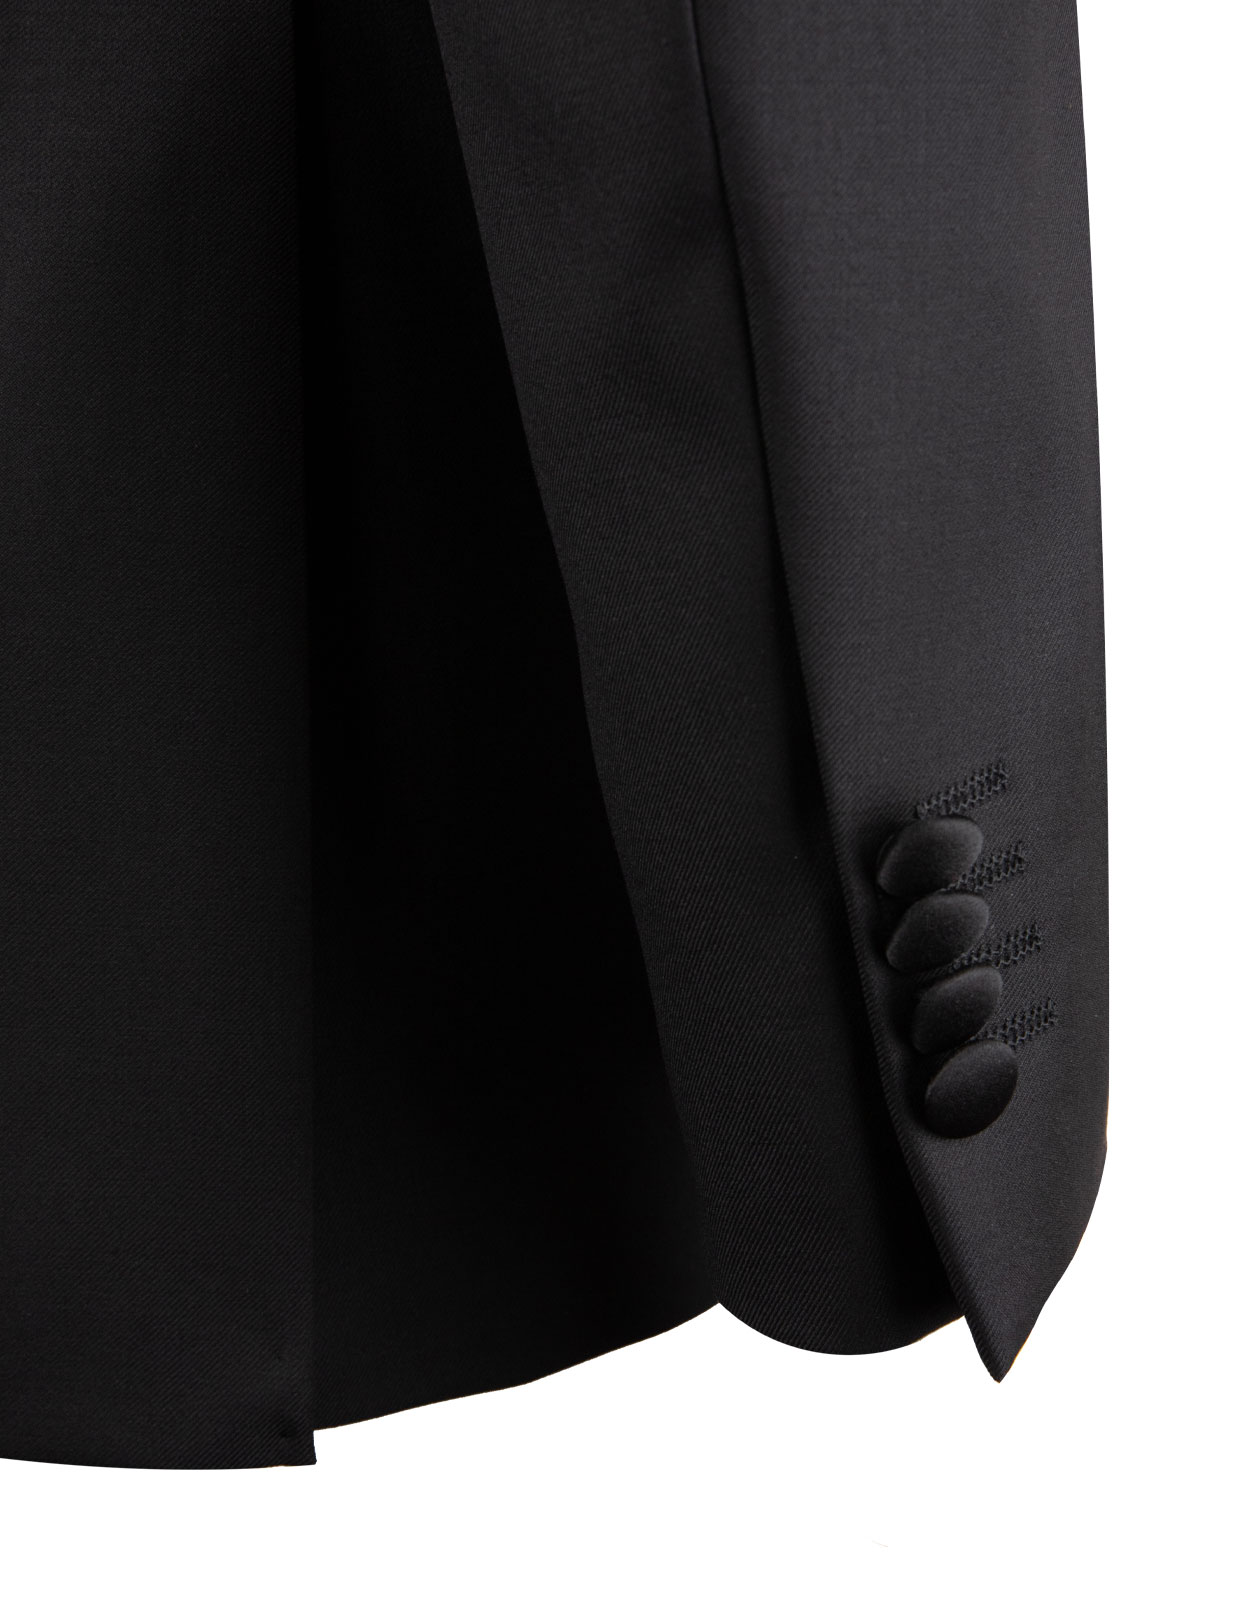 Tuxedo Shawl Jacket Mix & Match Black